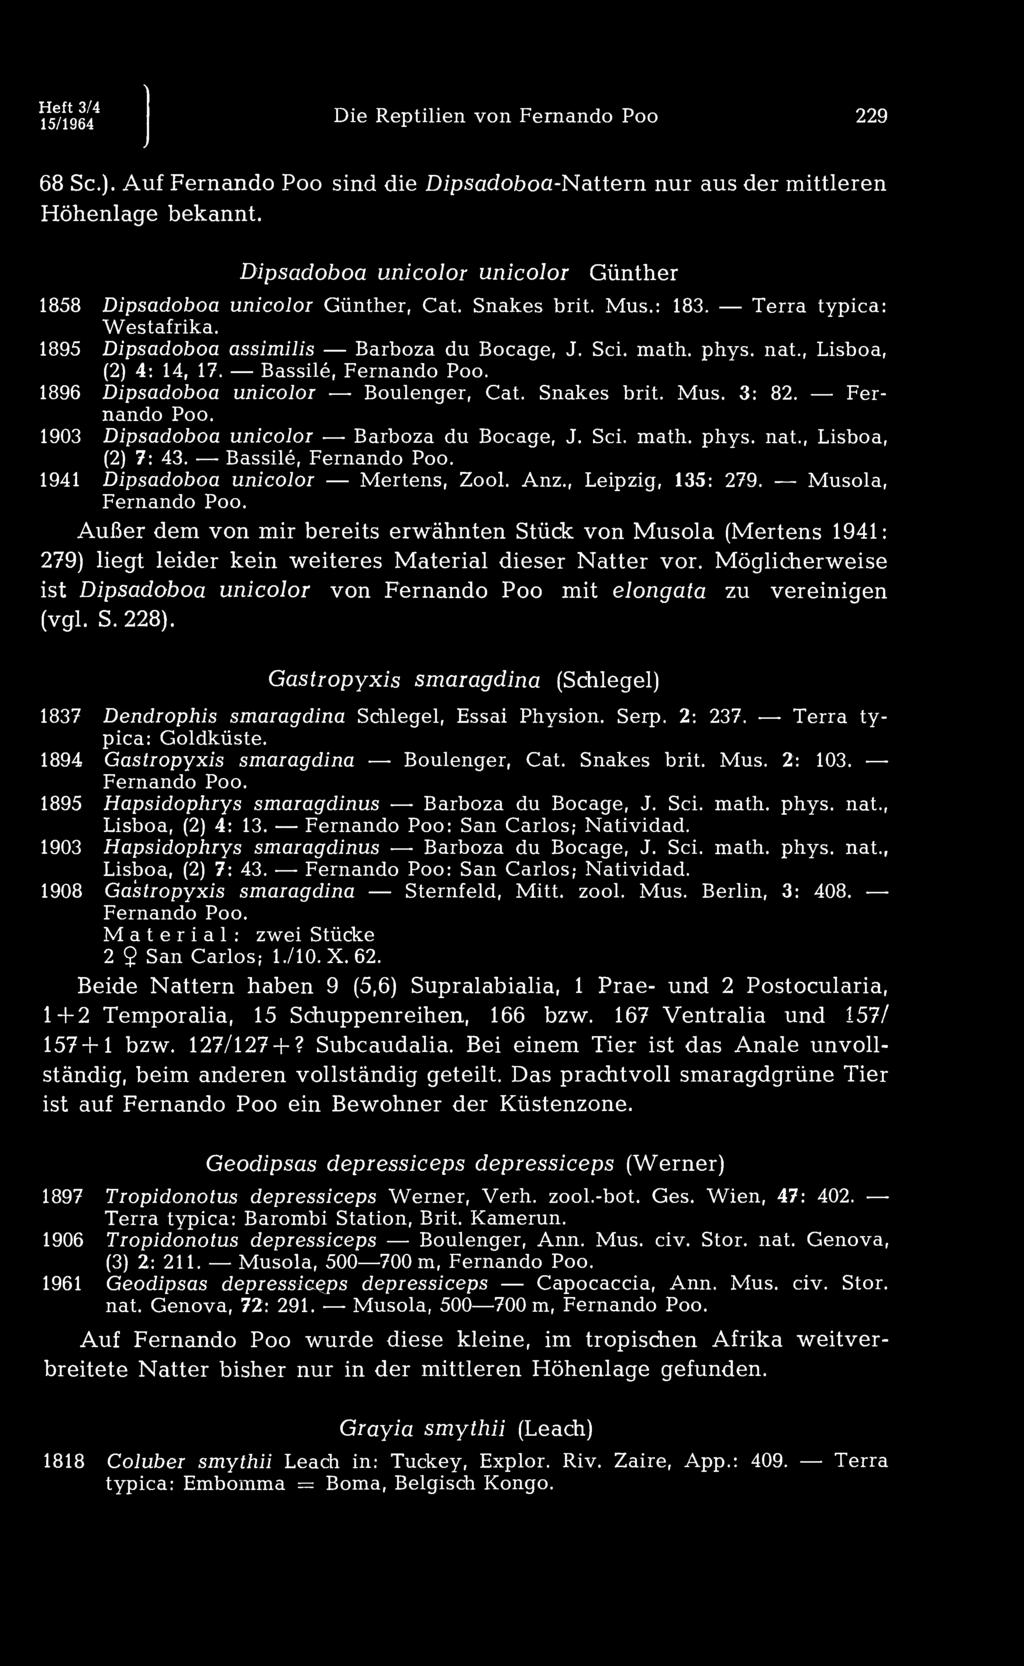 Heft 3/4 15/1964 Die Reptilien von Fernando Poo 229 68 Sc). Auf Fernando Poo sind die Dipsadoboa-Nattern nur aus der mittleren Höhenlage bekannt.